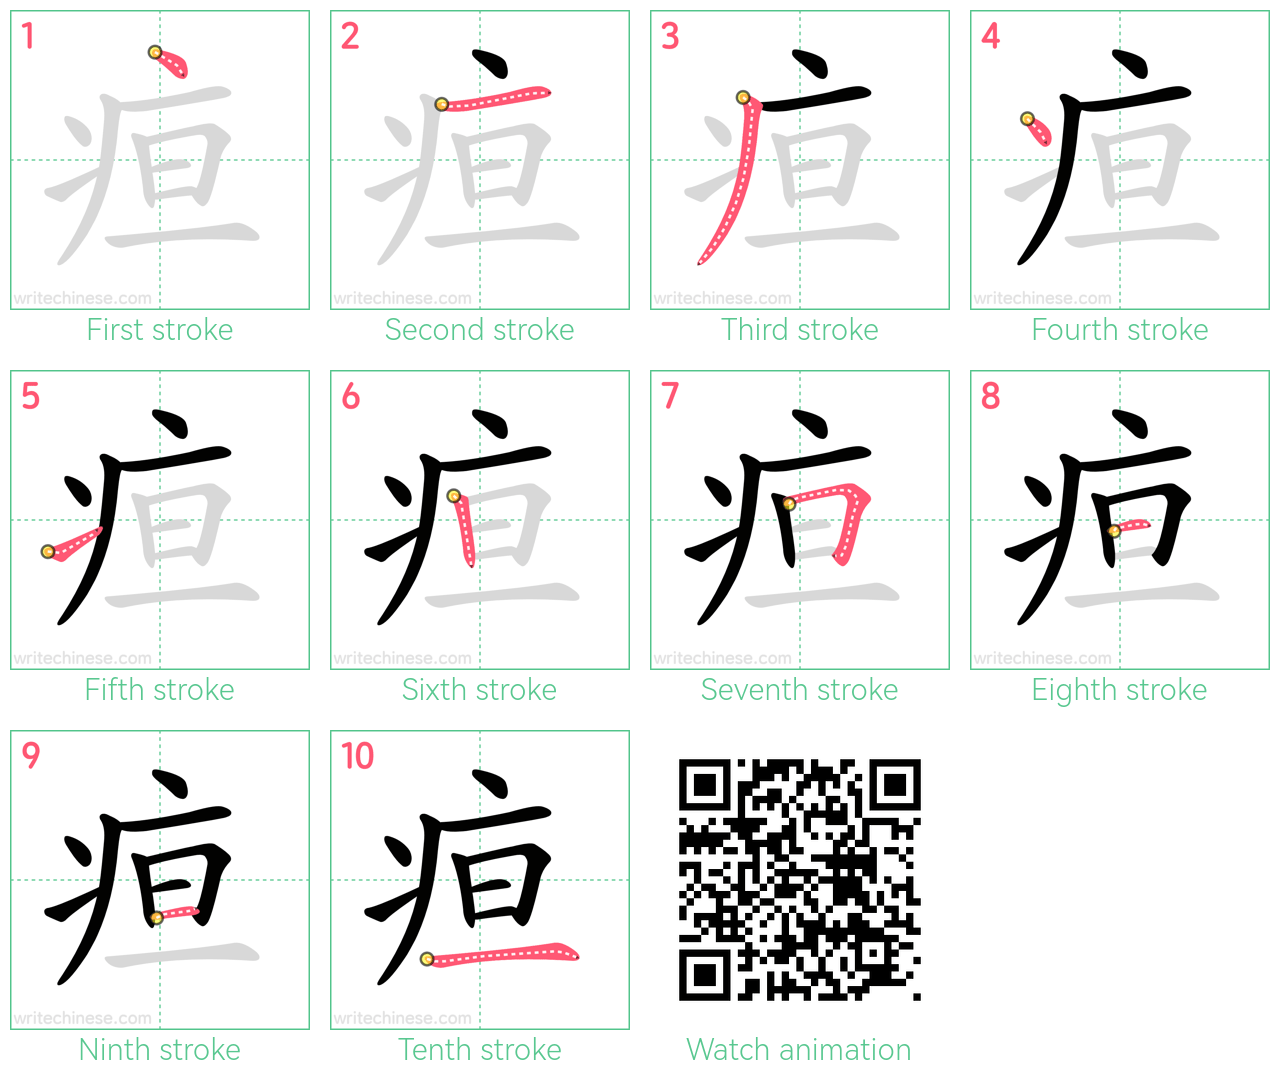 疸 step-by-step stroke order diagrams